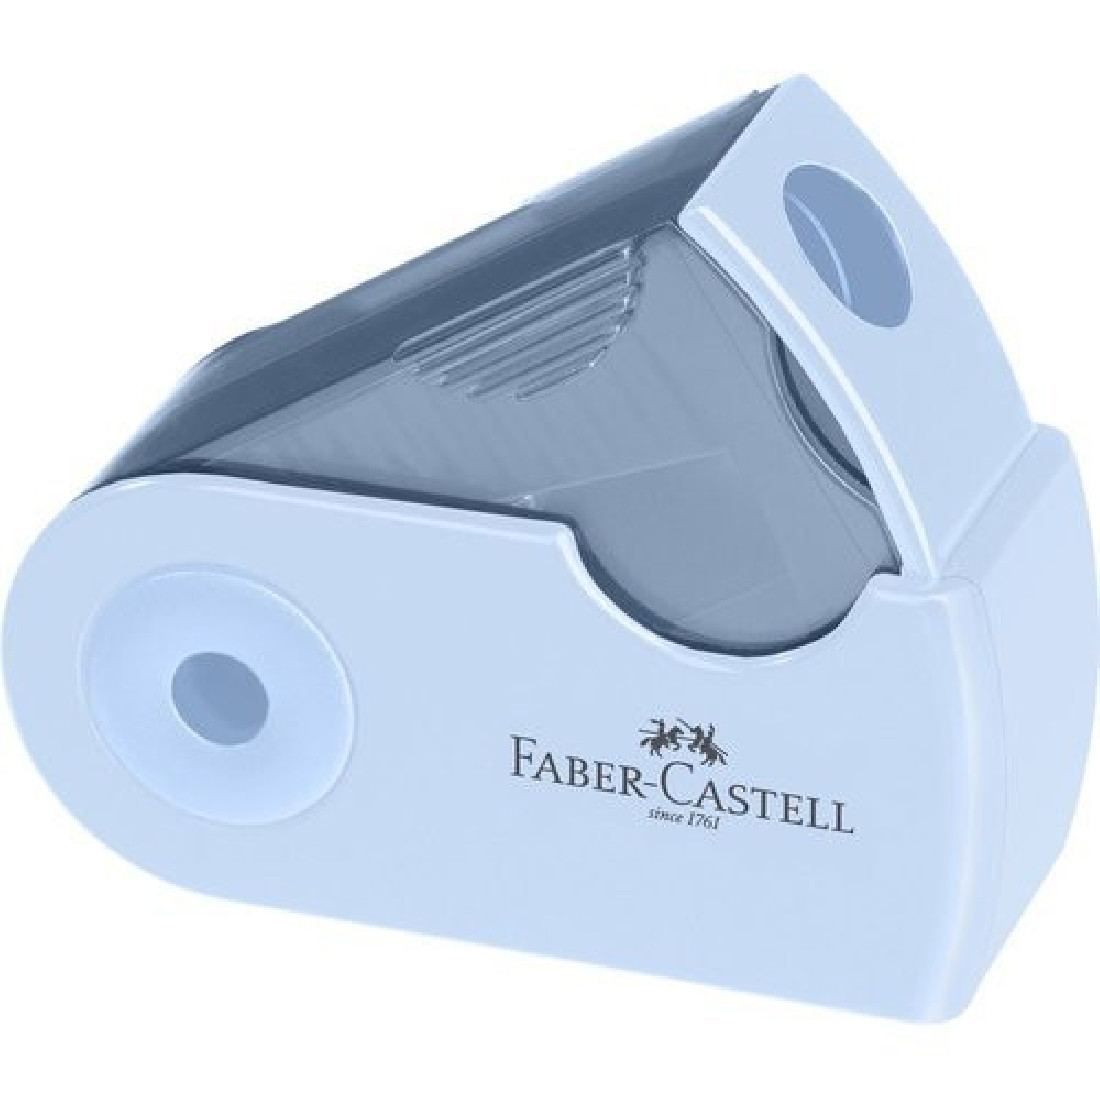 Μονή ξύστρα mini sleeve sky blue/μαύρο/ρόζ 182774 Faber-Castell